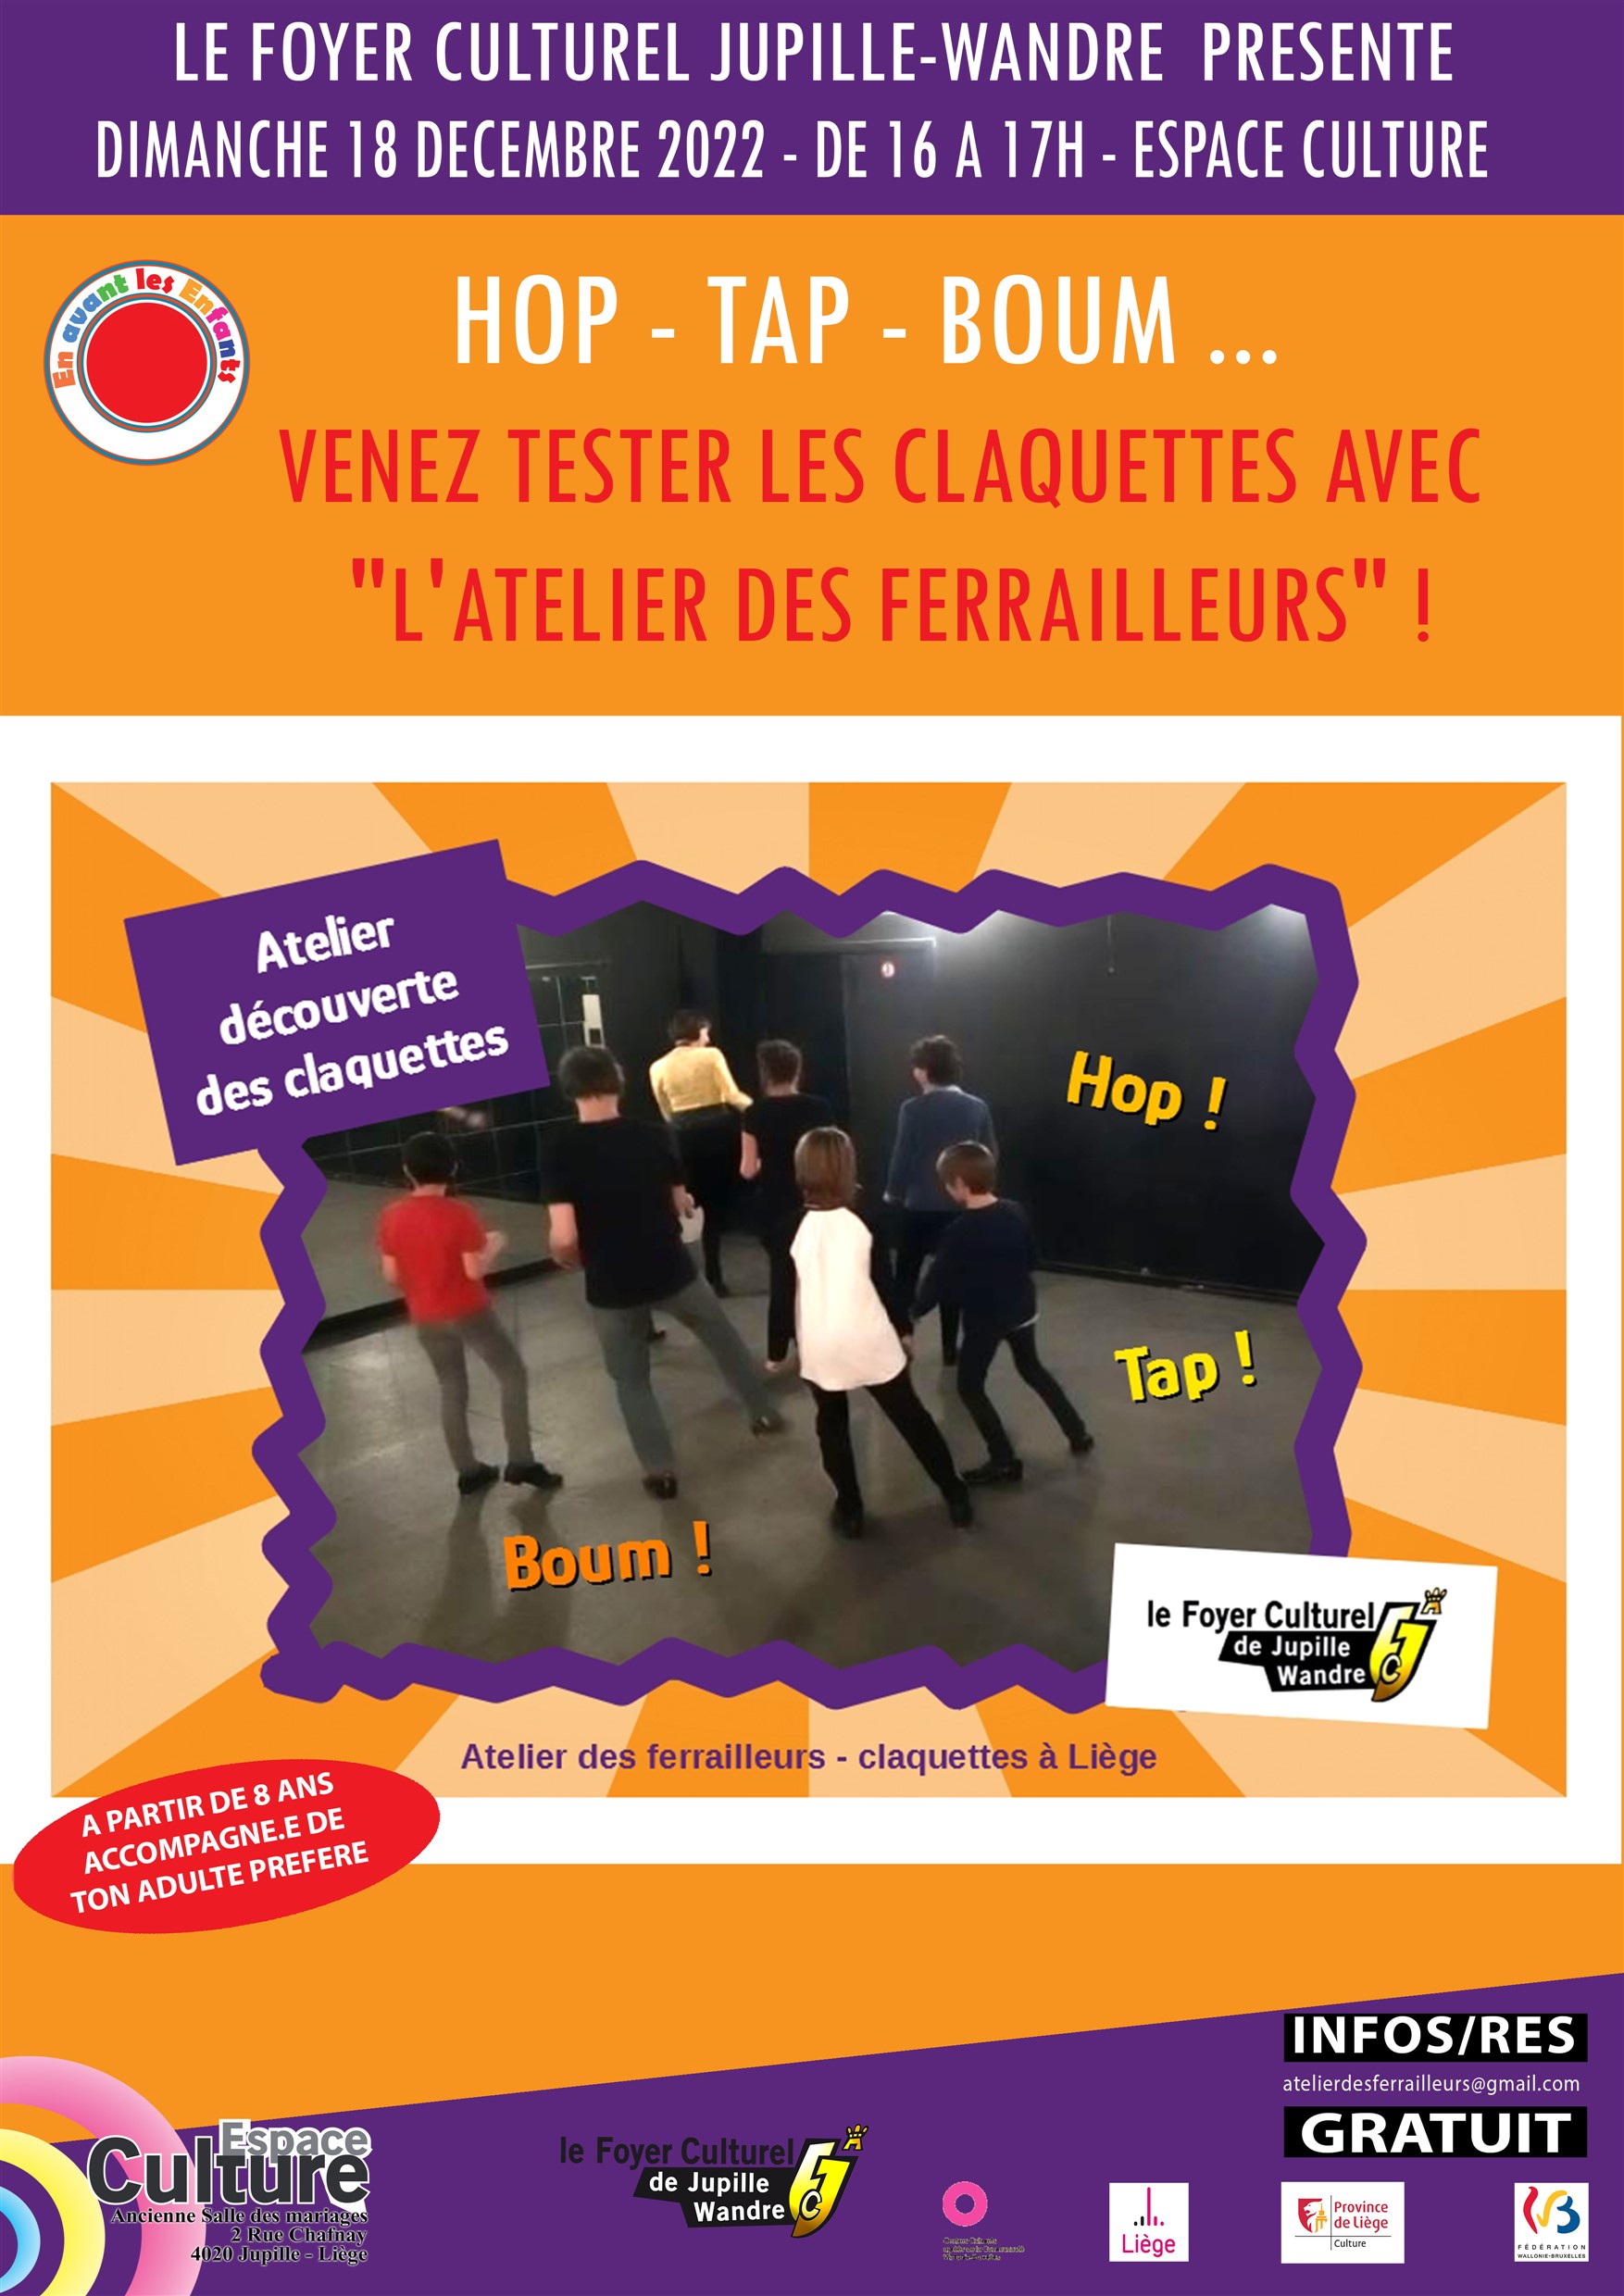 Hop - Tap - Boum Venez tester les claquettes avec "L'Atelier des Ferailleurs"! à Espace Culture de JUPILLE